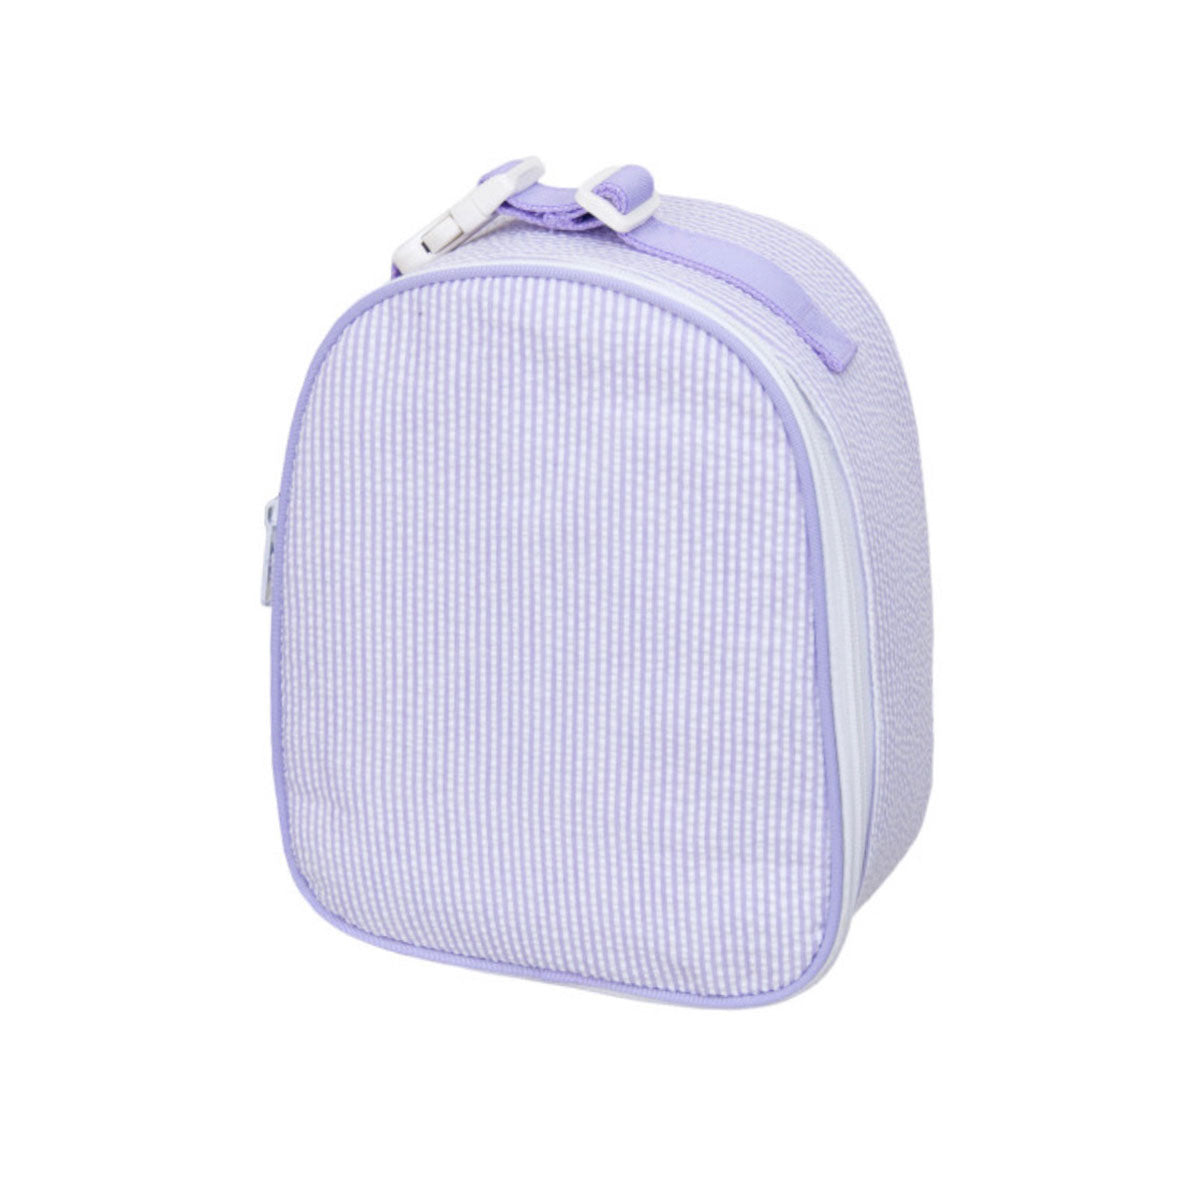 Gumdrop Insulated Bag - Lilac Seersucker